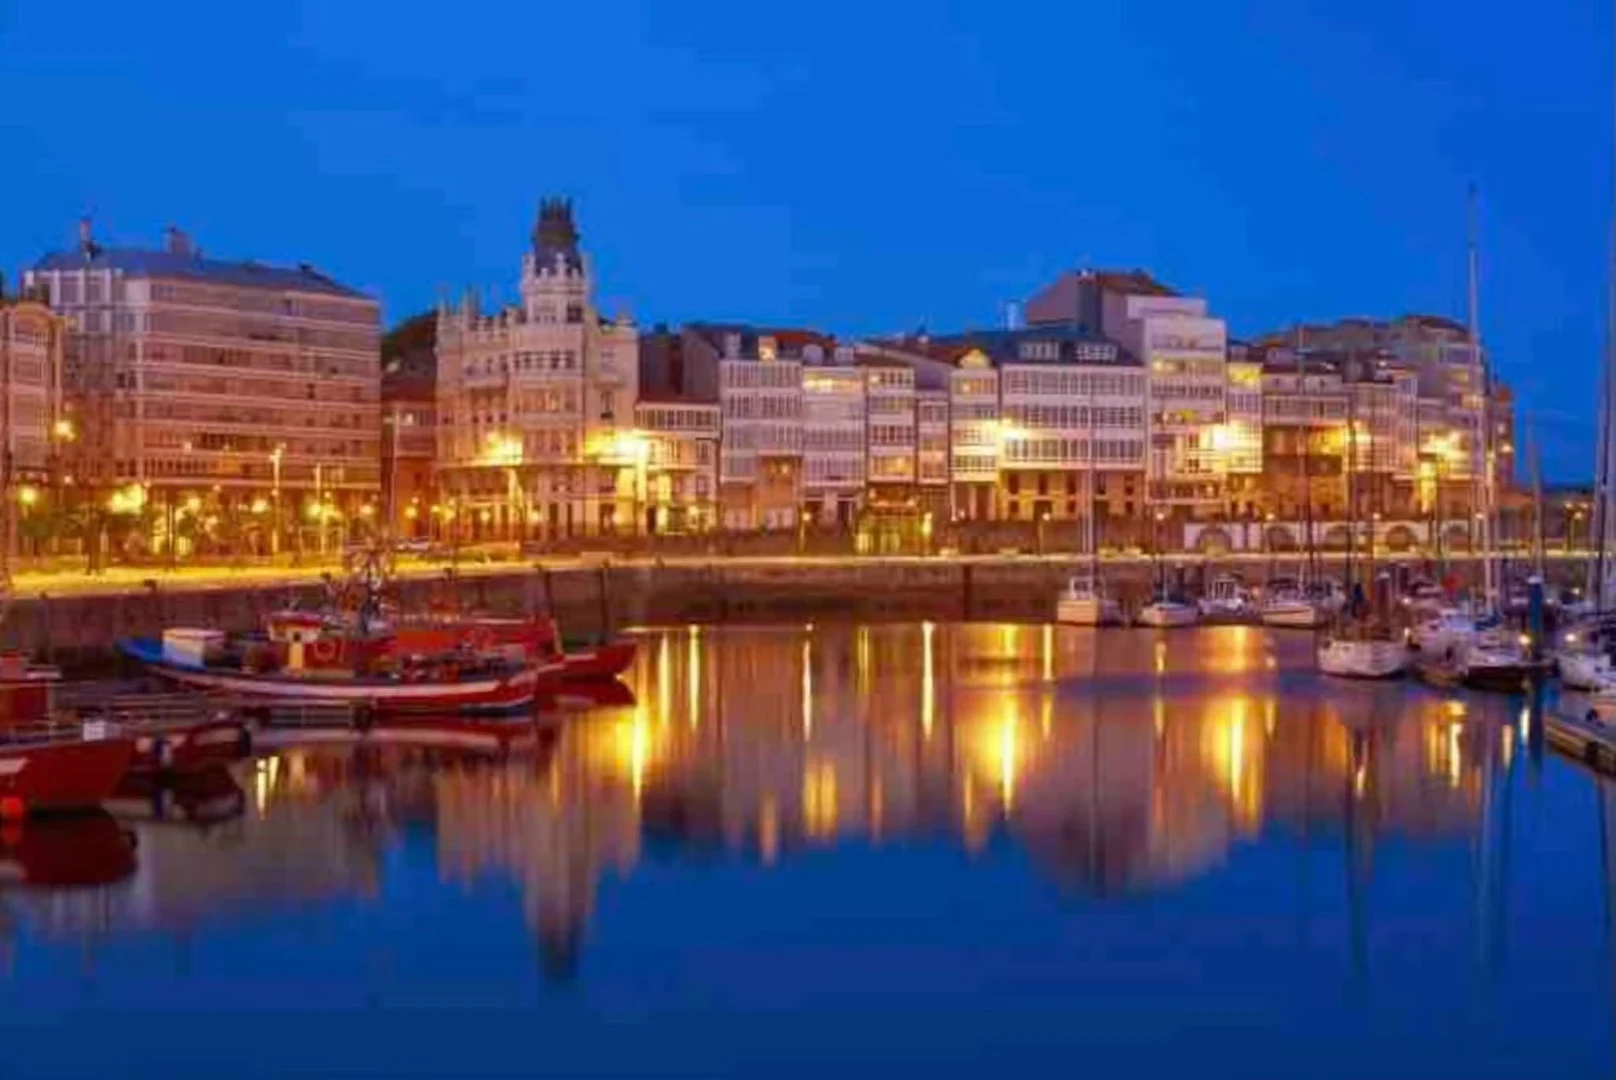 Quarto para alugar com cama de casal em Uma Coruña